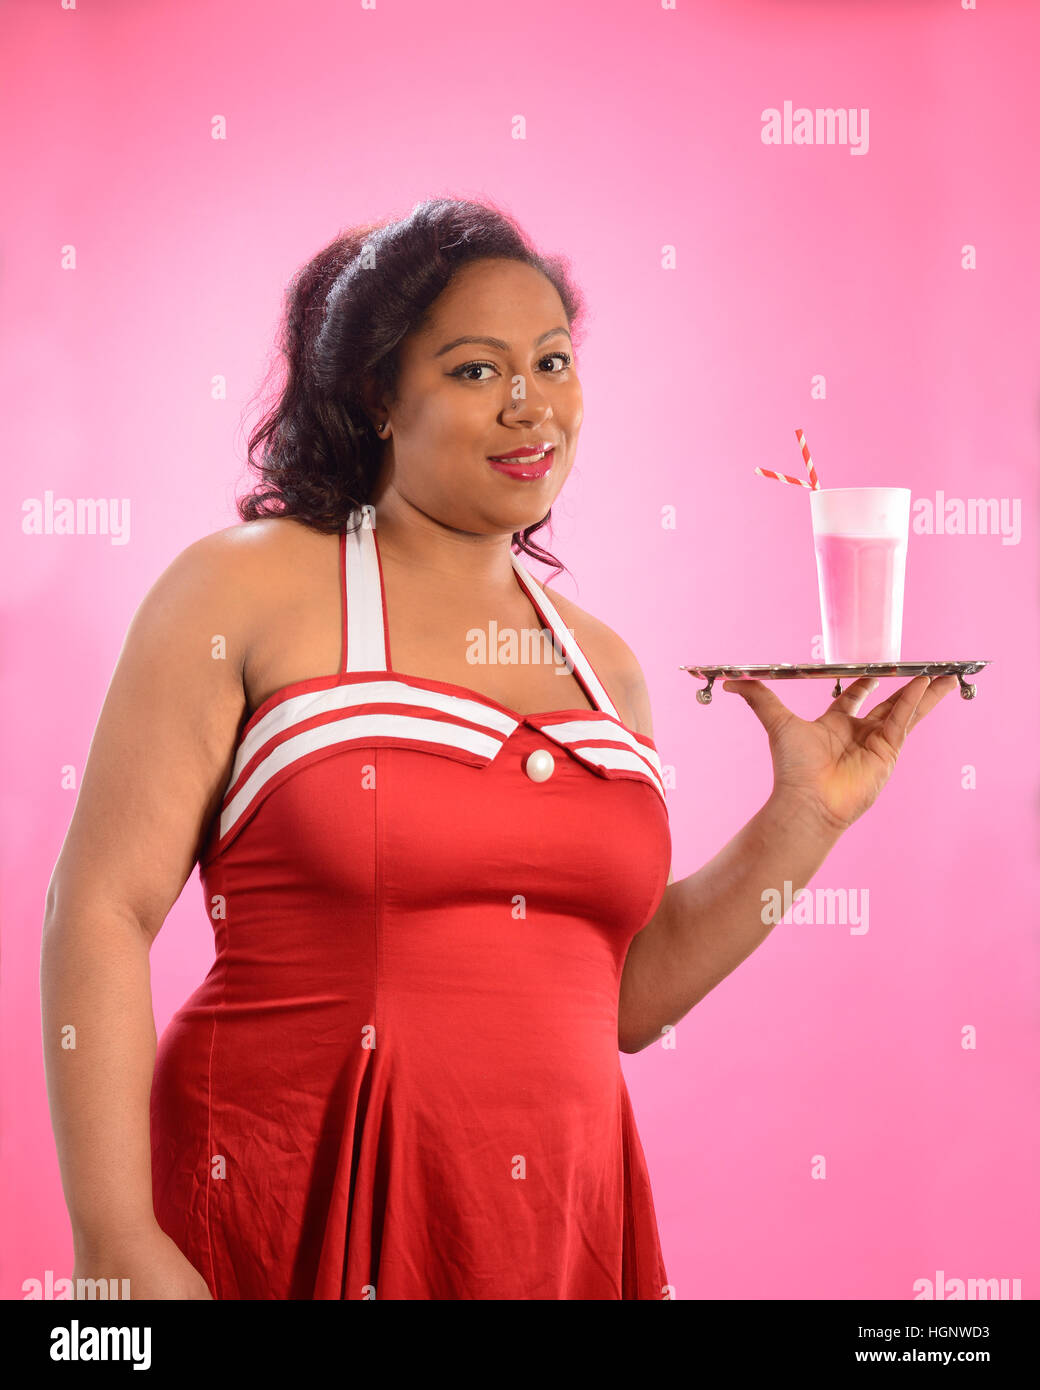 Pin Up Chica sujetando una bandeja de plata con milkshake Fotografía de  stock - Alamy